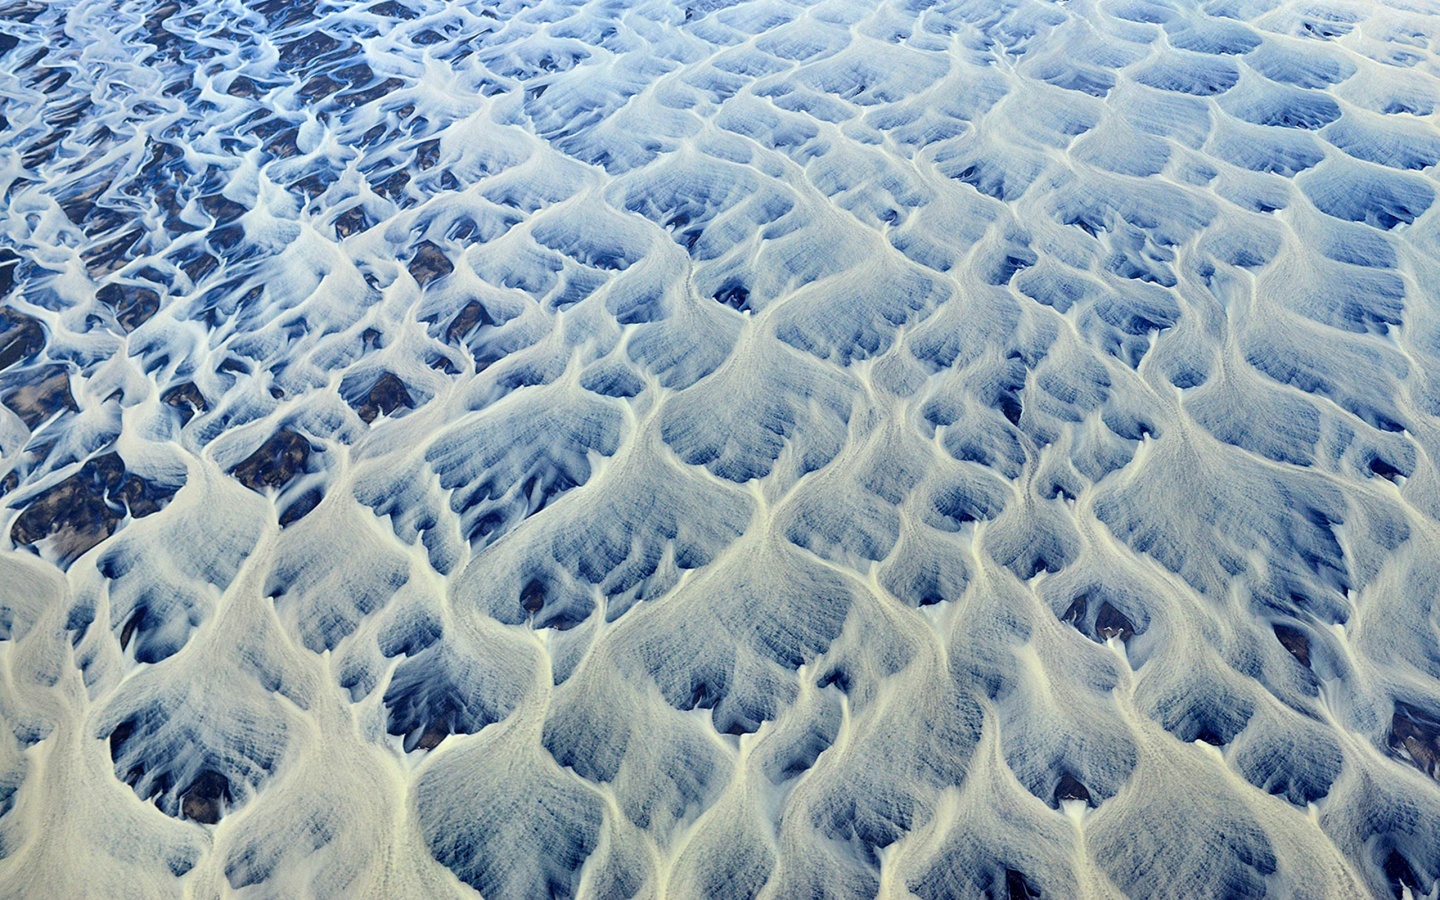 Izland befagyott folyói - Andre Ermolaev légifotói